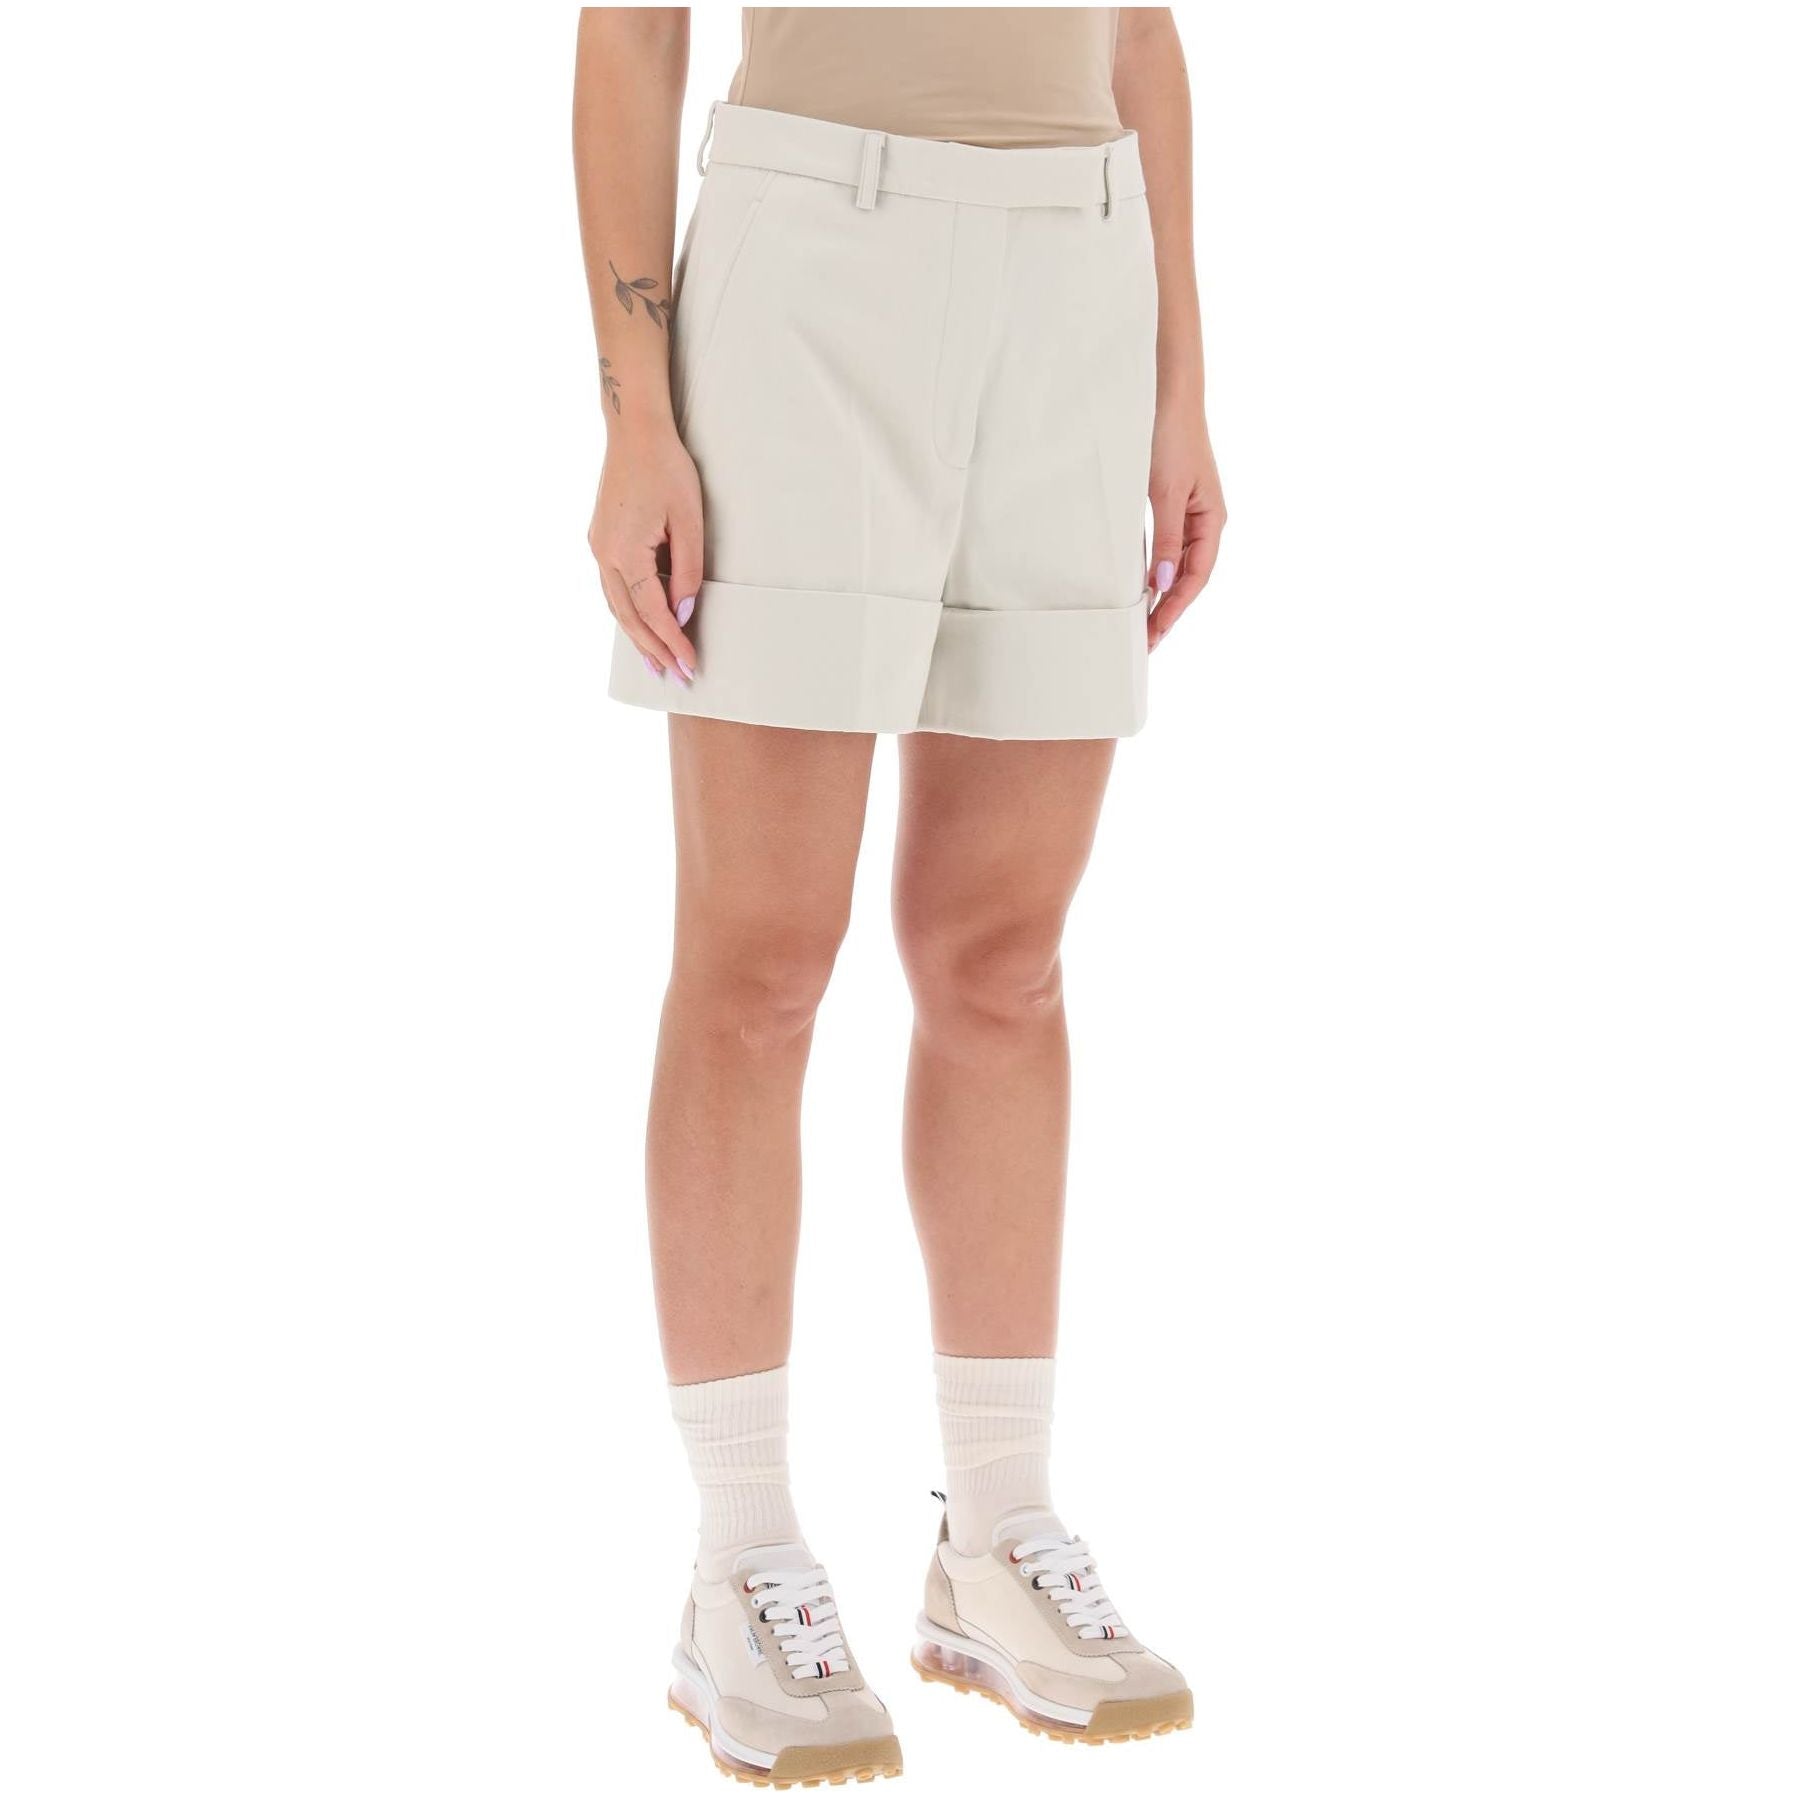 Shorts In Cotton Gabardine